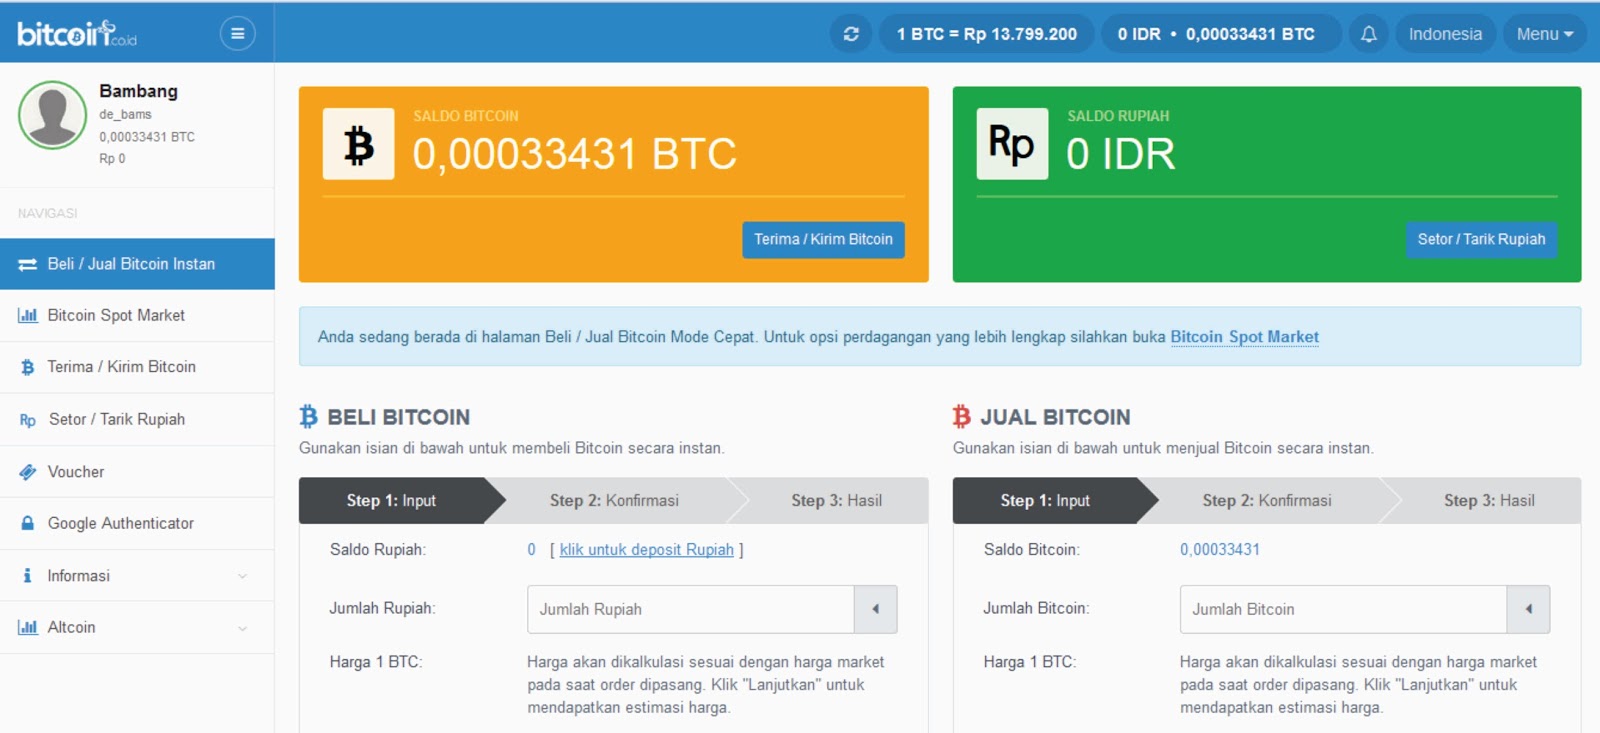 Bitcoin Cash Online Wallet Bitcoin Malaysia Forum Loviguie Rondon - 